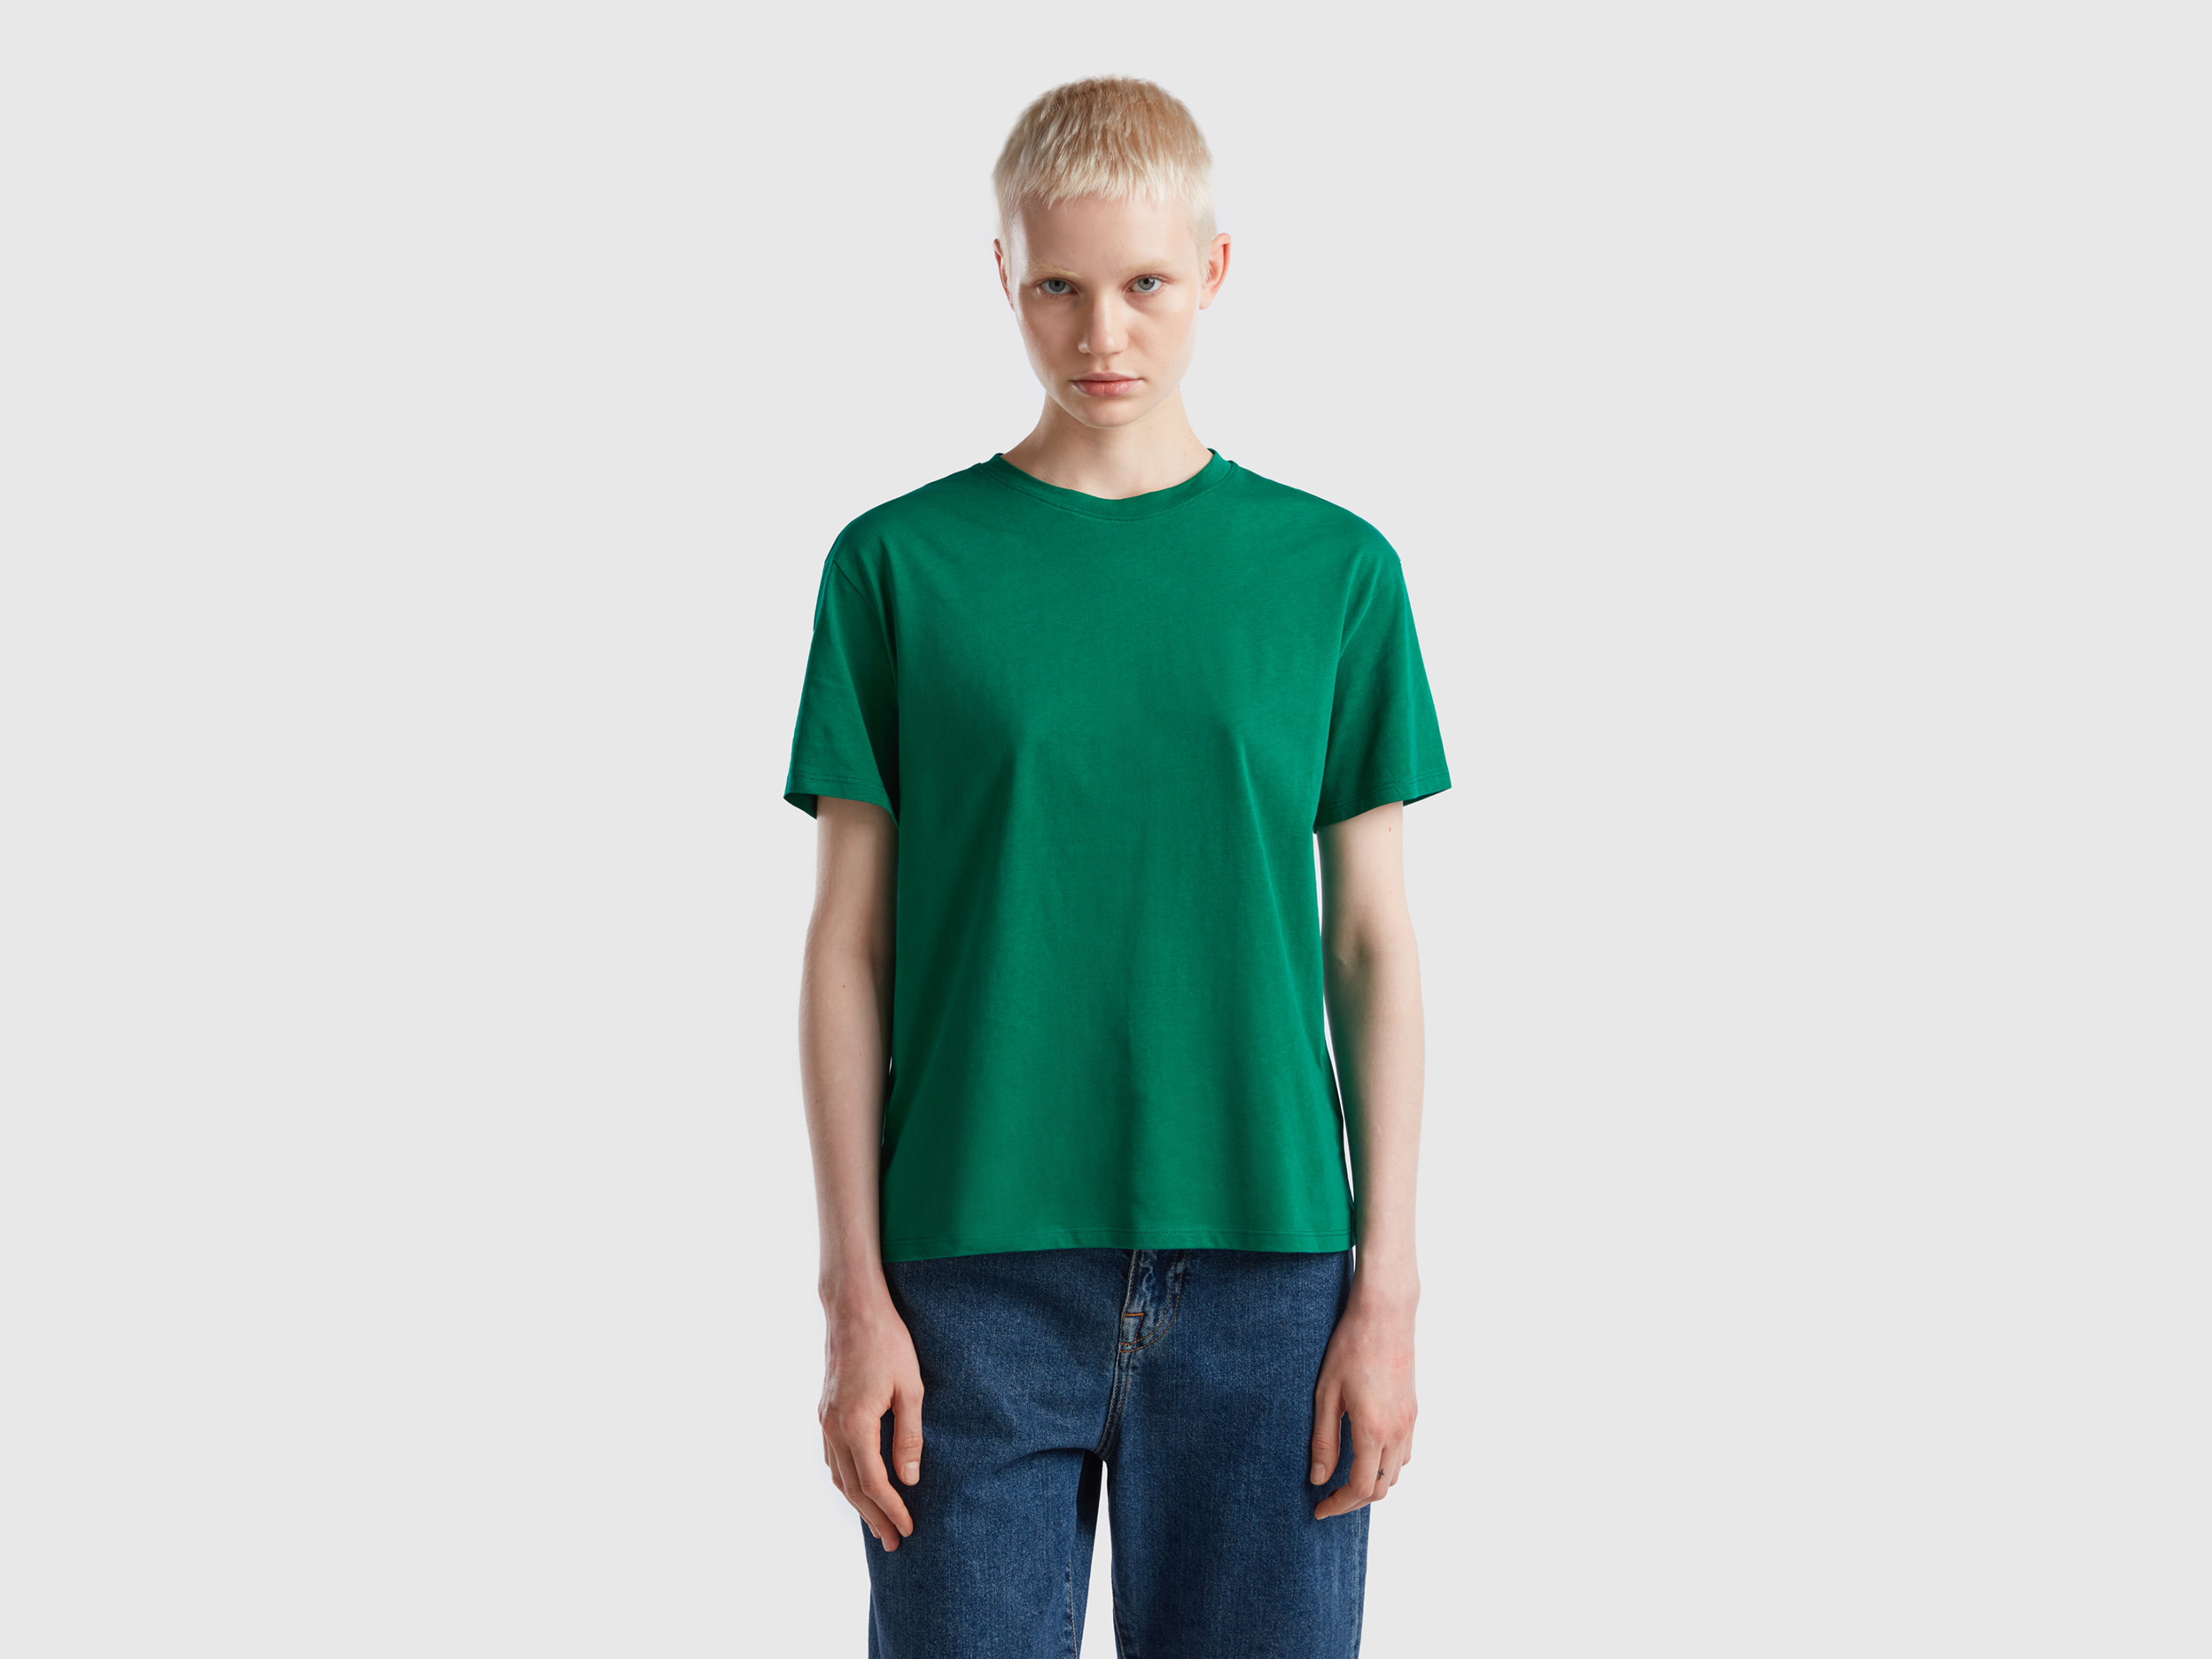 Benetton, Short Sleeve 100% Cotton T-shirt, size XS, Green, Women